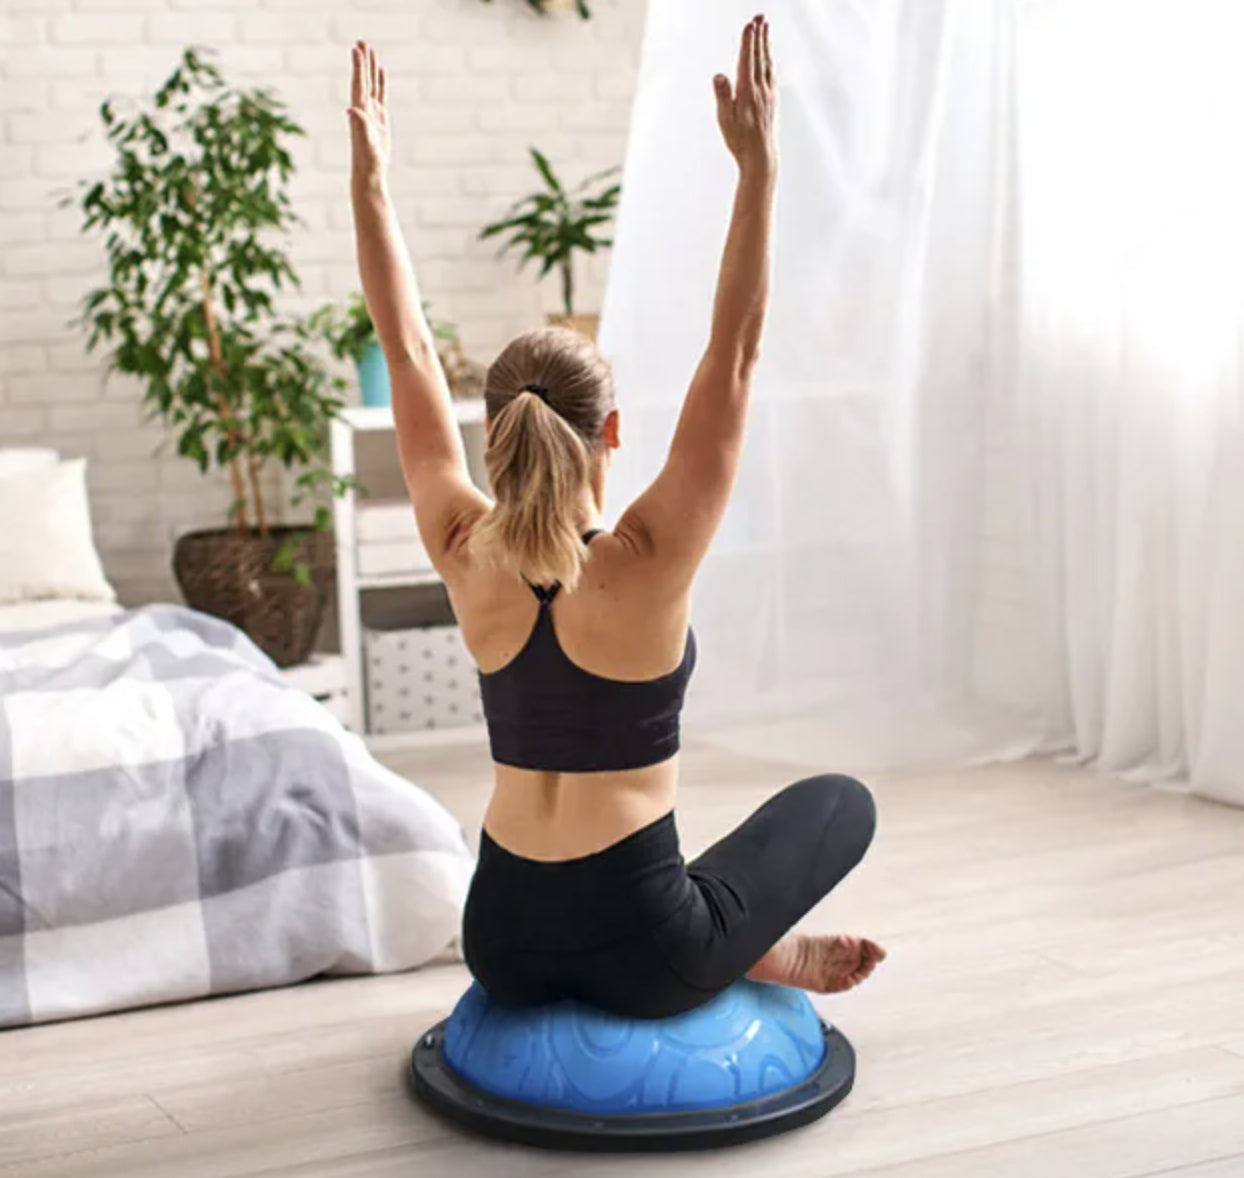 Half Ball Balance Trainer Yoga - Personal Hour for Yoga and Meditations 